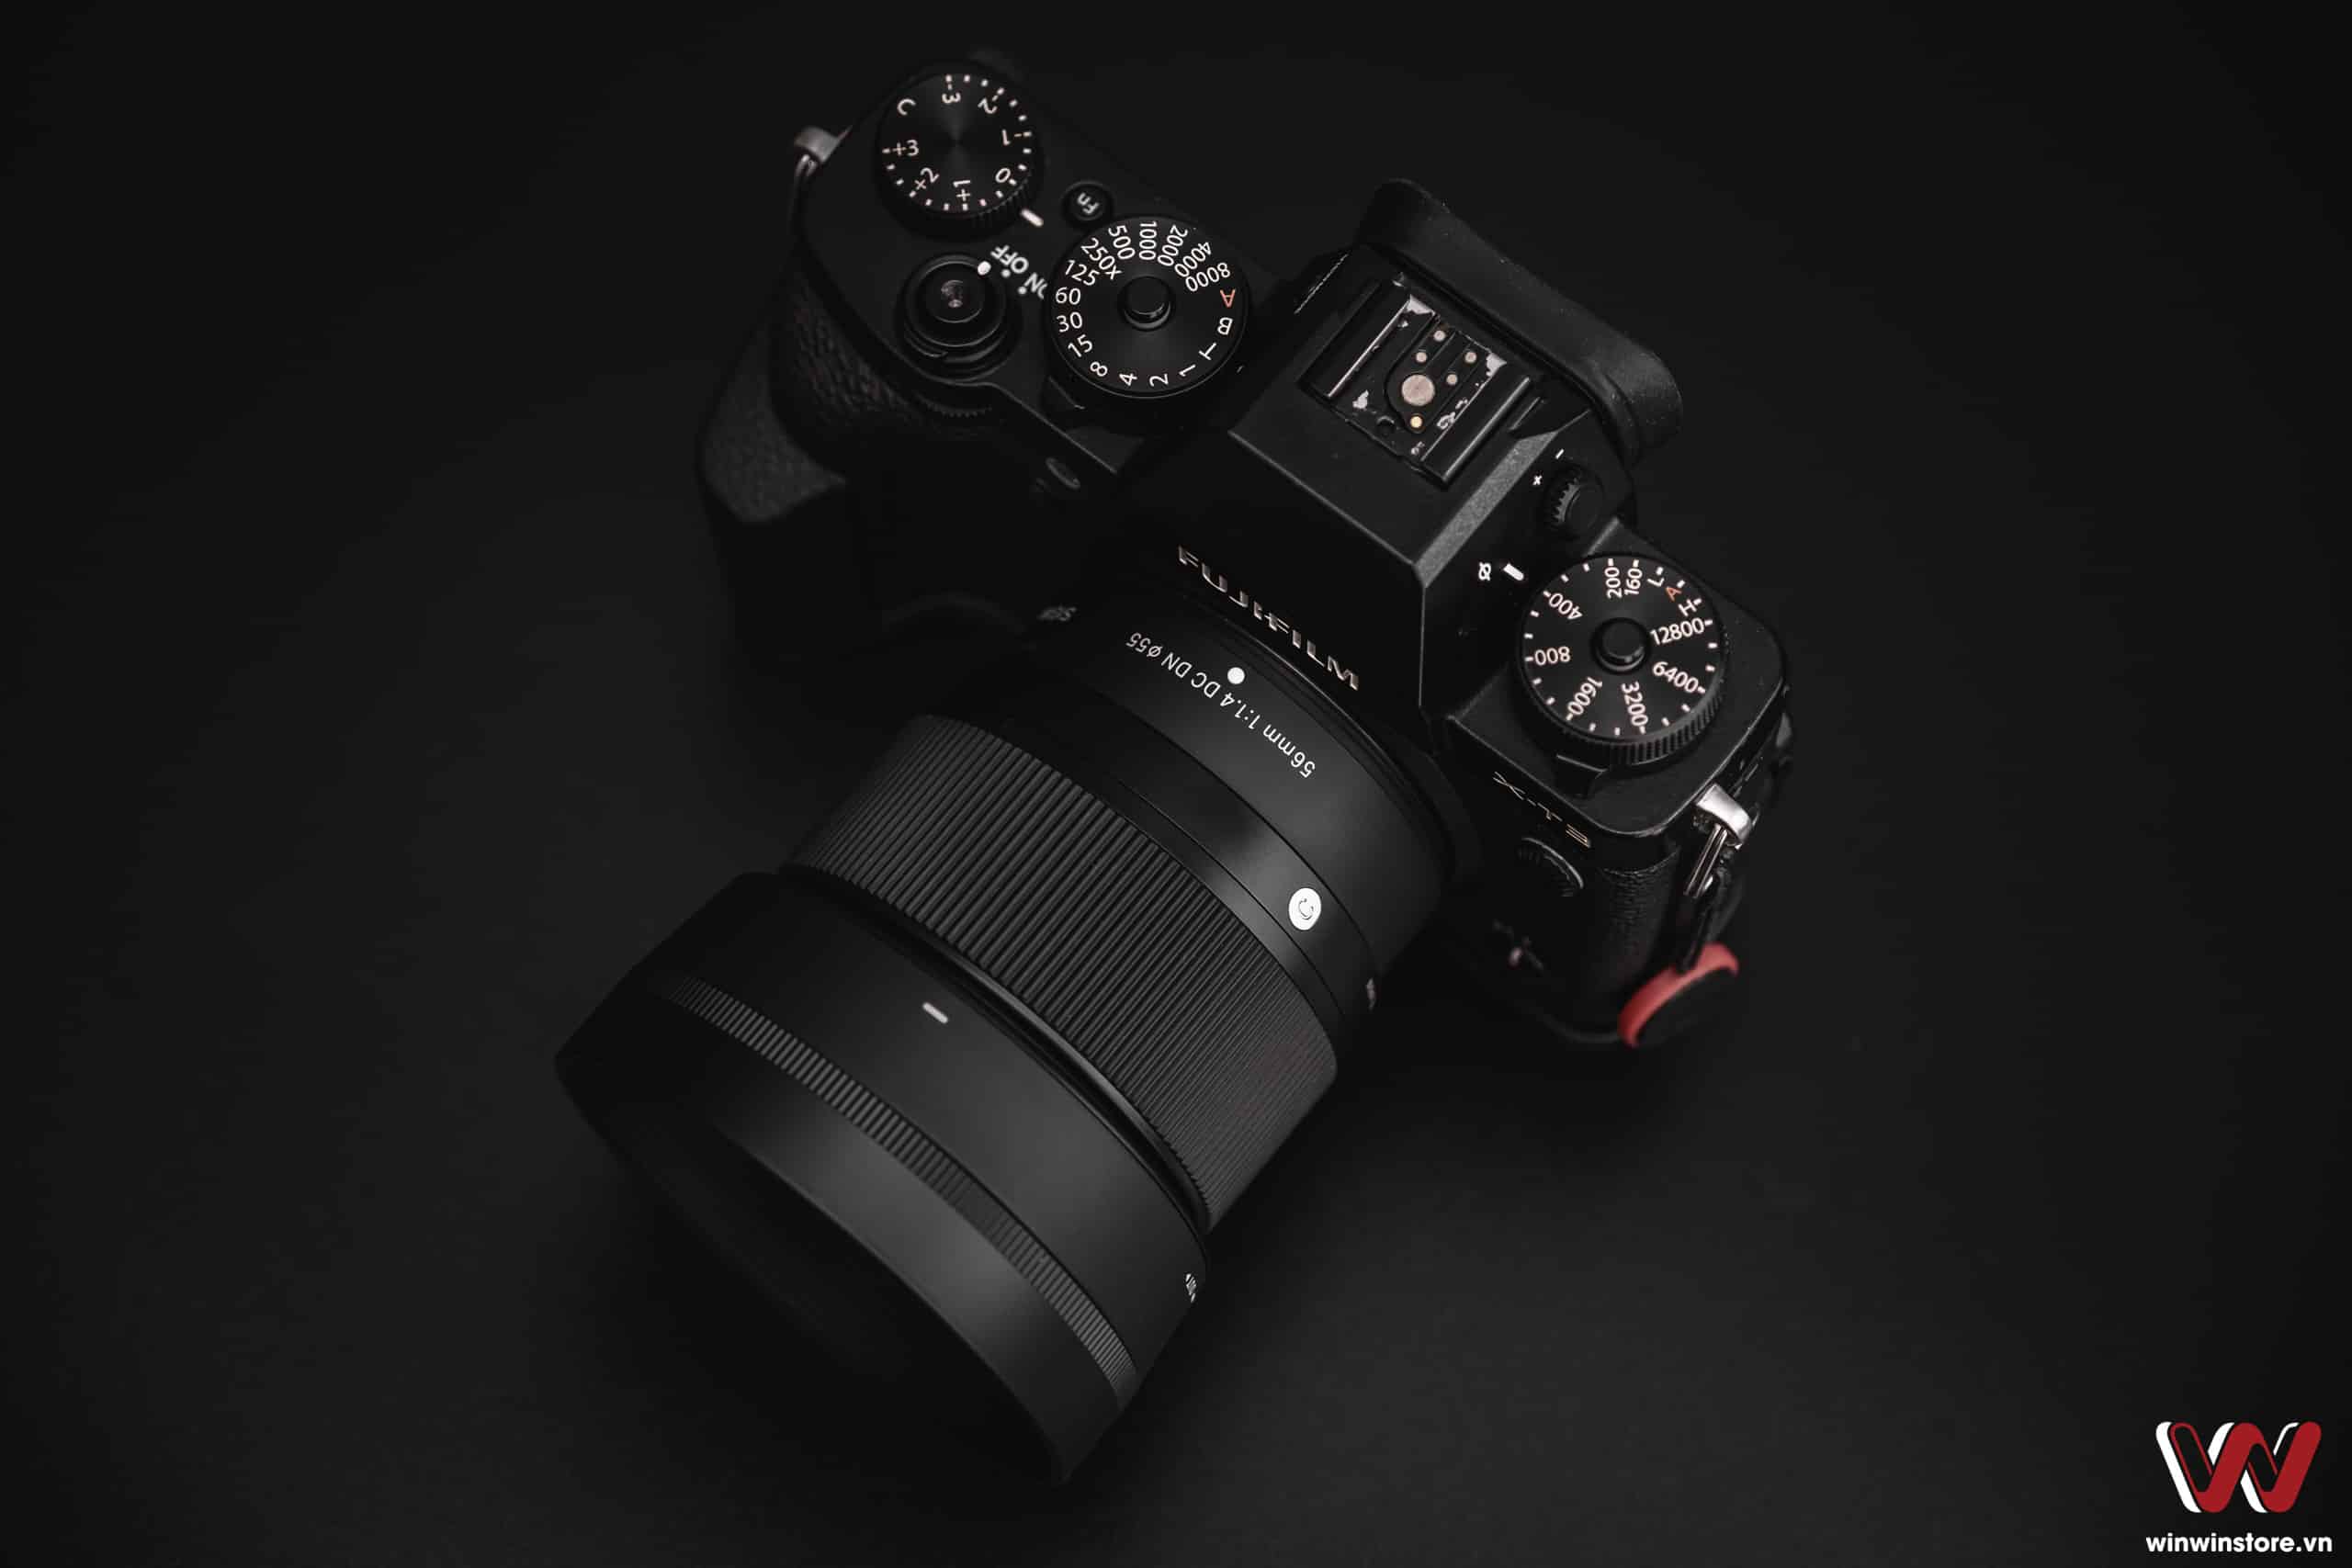 Trên tay ống kính Sigma 56mm F1.4 DC DN Contemporary cho Fujifilm: Ống kính chân dung giá tốt chất lượng cao